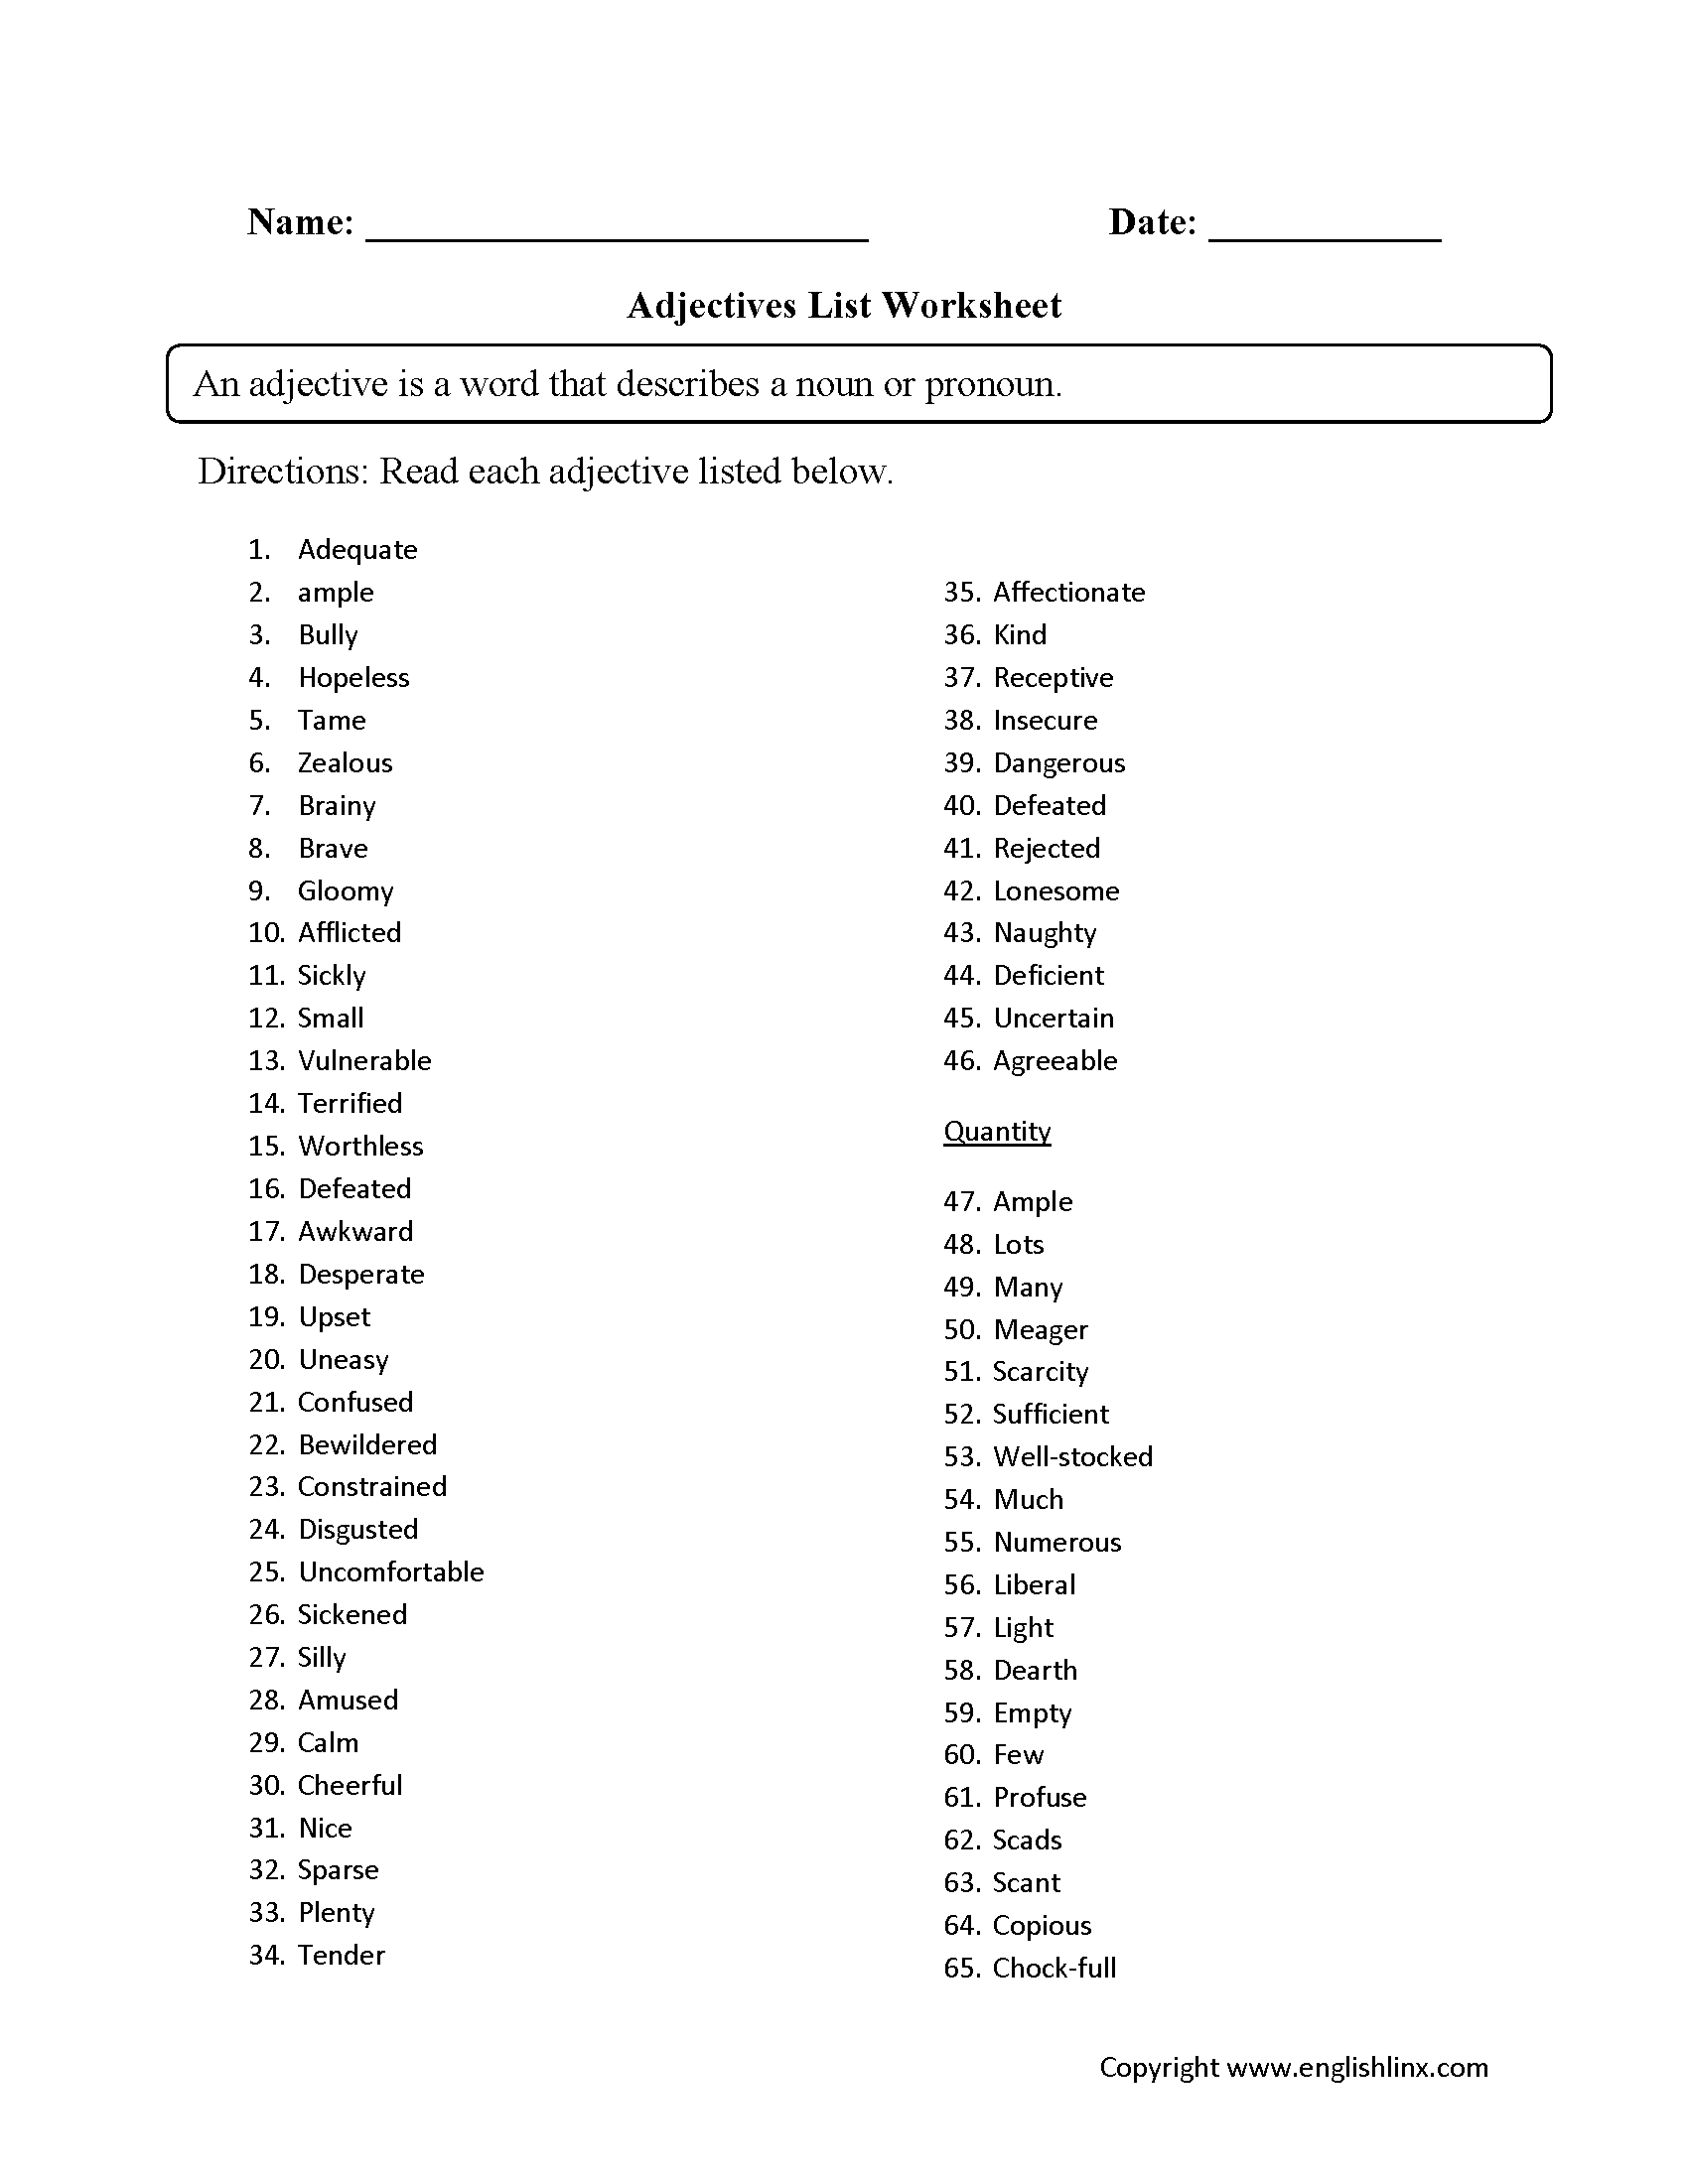 Adjectives List Worksheet